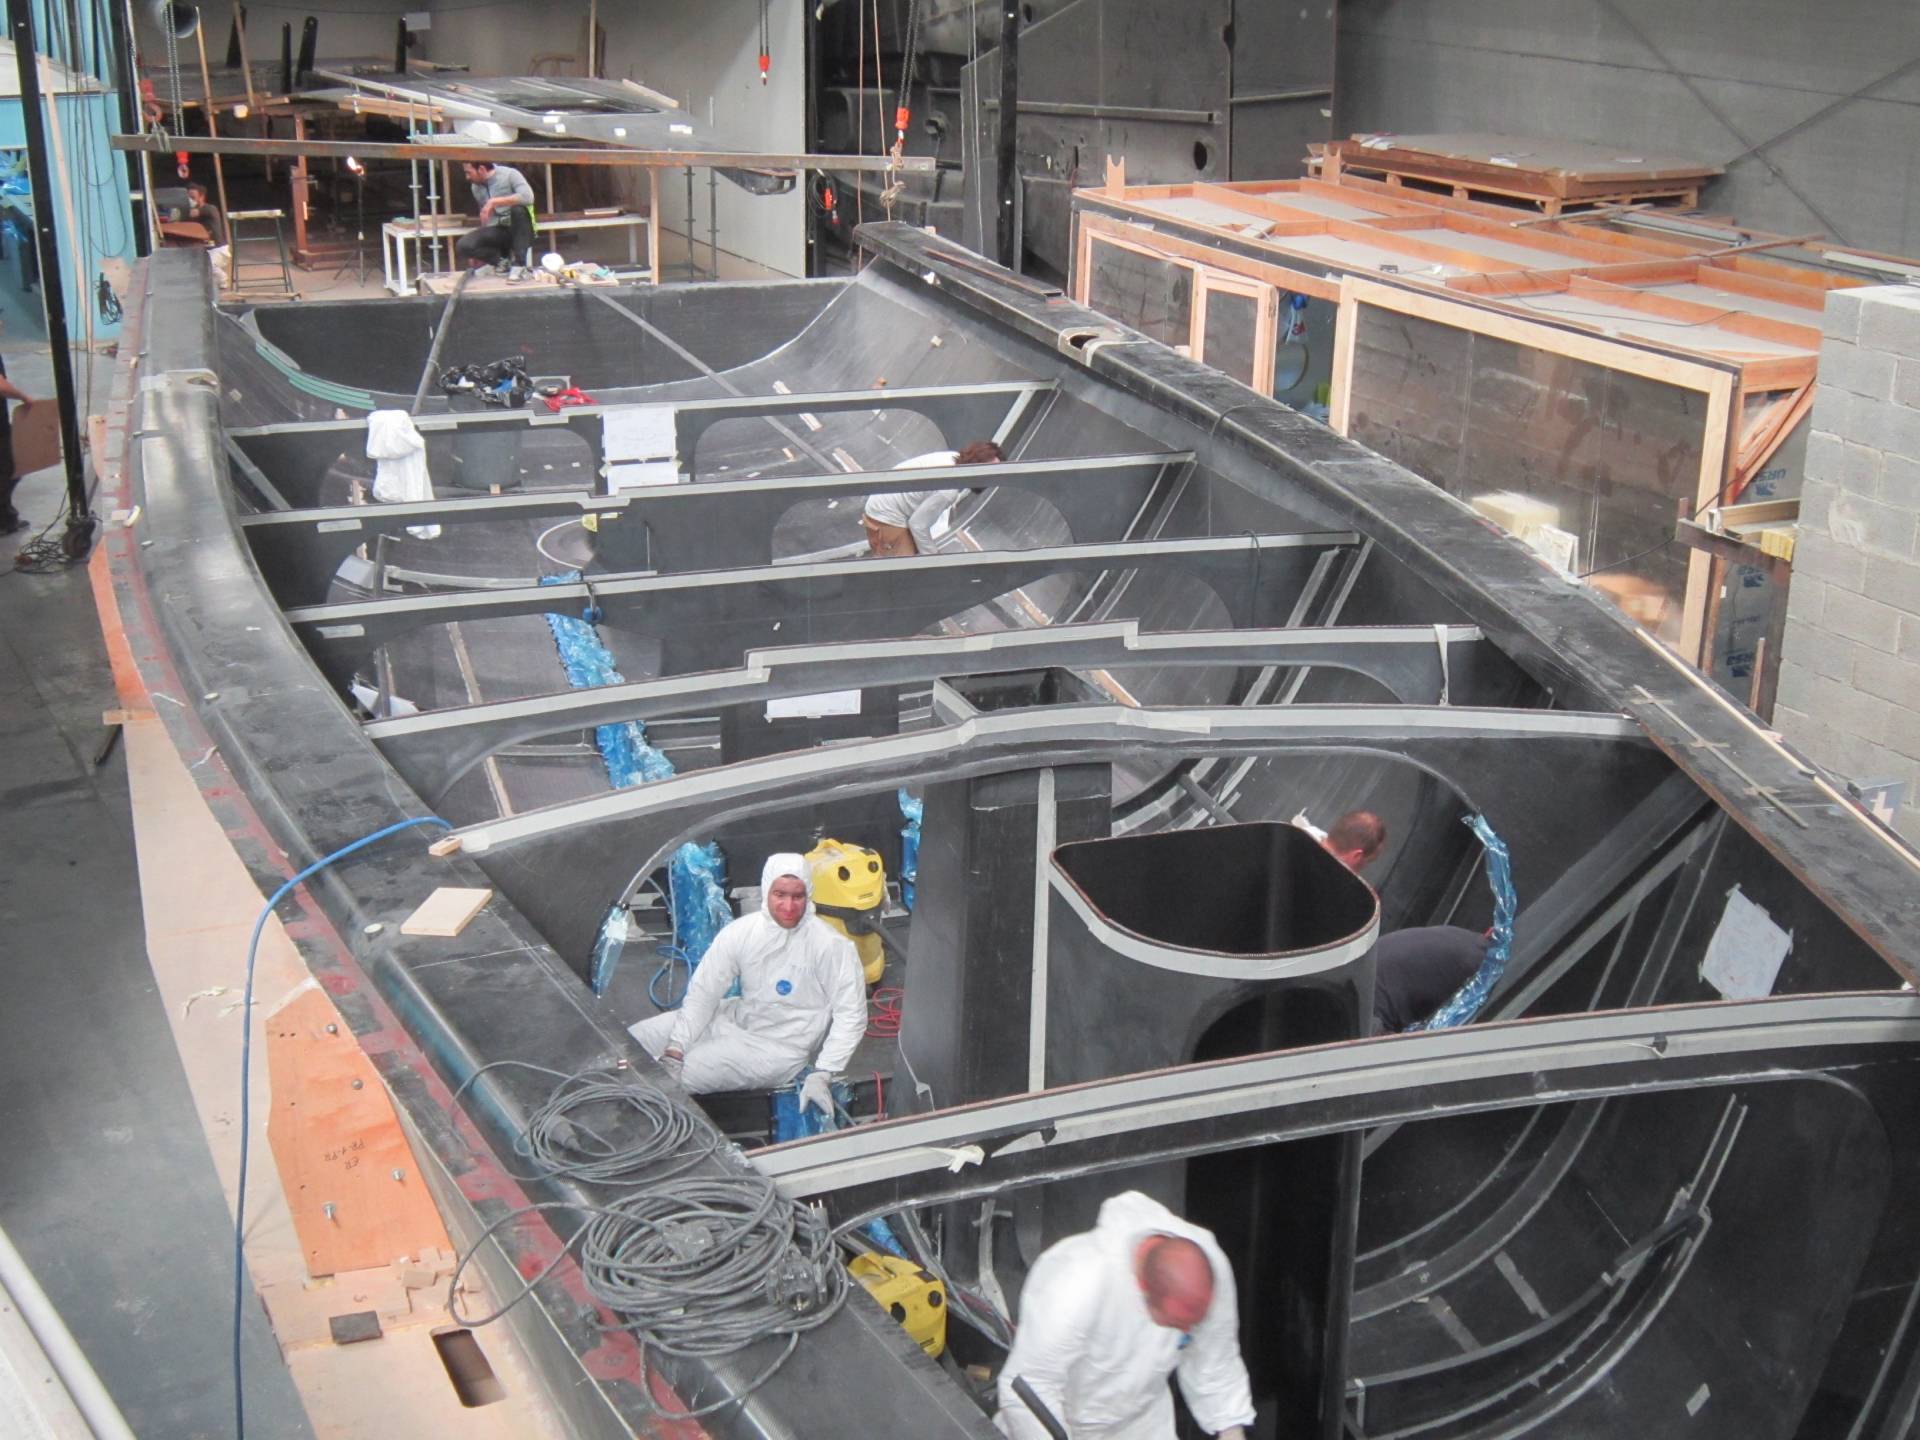 Alegre III - Boat building project Michele Molino process